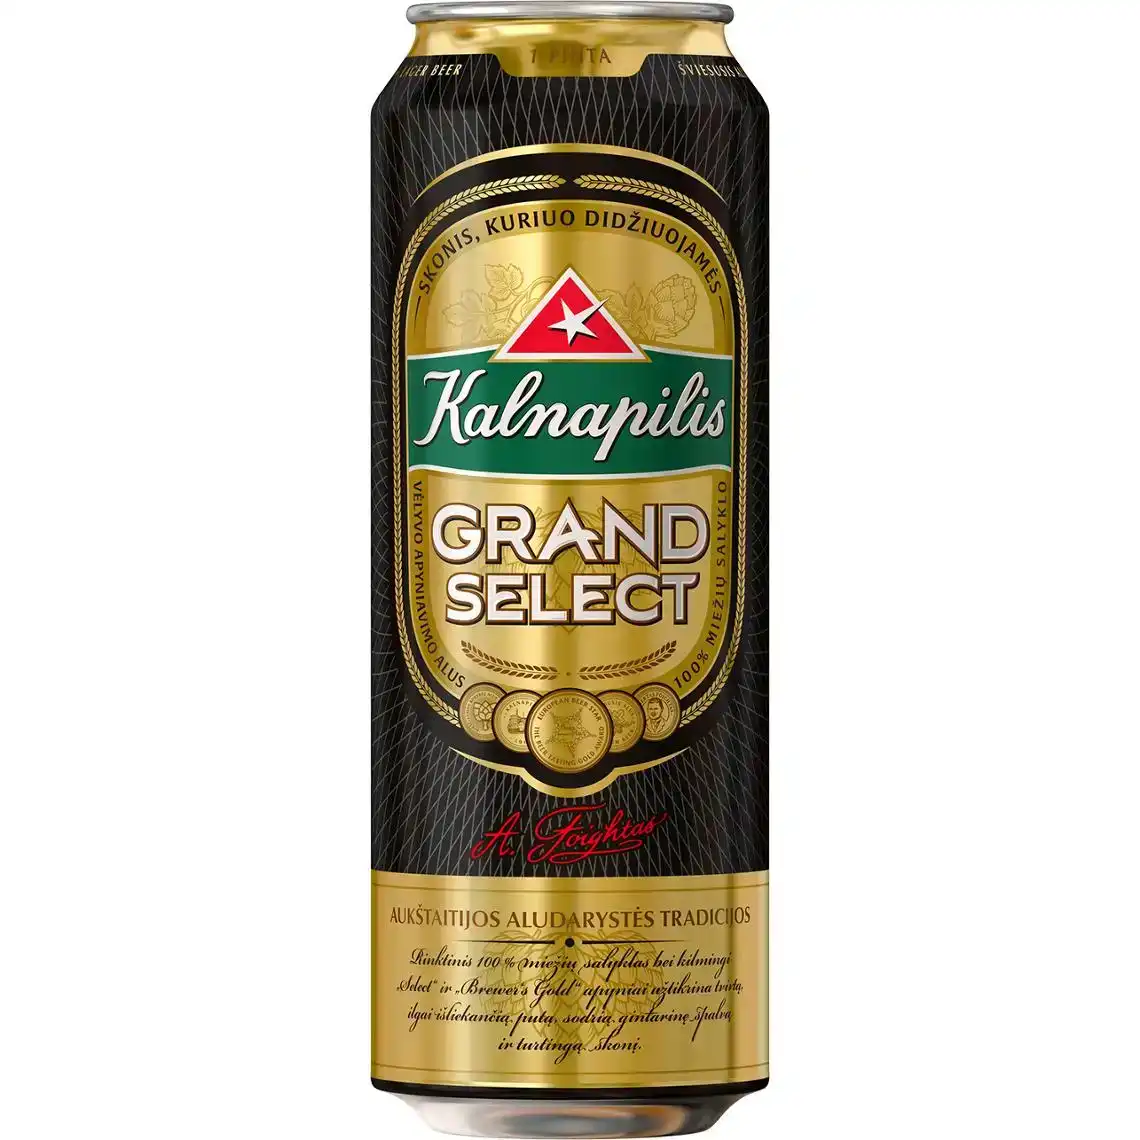 Пиво Kalnapilis Grand Select світле фільтроване 5.4% 0.568 л